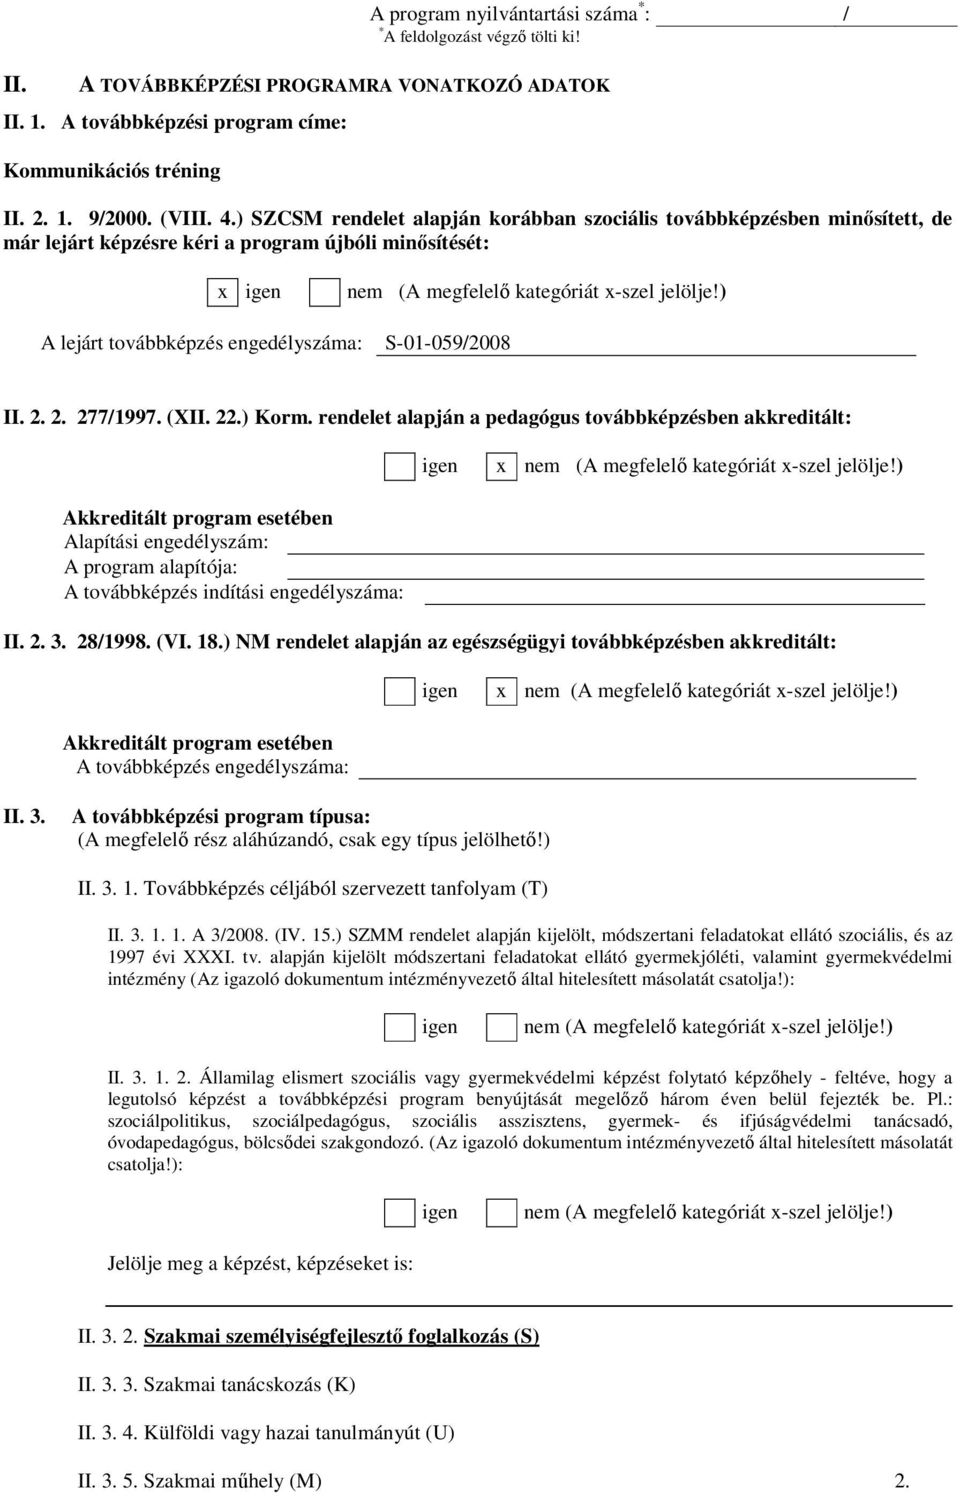 ) A lejárt továbbképzés engedélyszáma: S-01-059/2008 II. 2. 2. 277/1997. (XII. 22.) Korm. rendelet alapján a pedagógus továbbképzésben akkreditált: igen x nem (A megfelelı kategóriát x-szel jelölje!